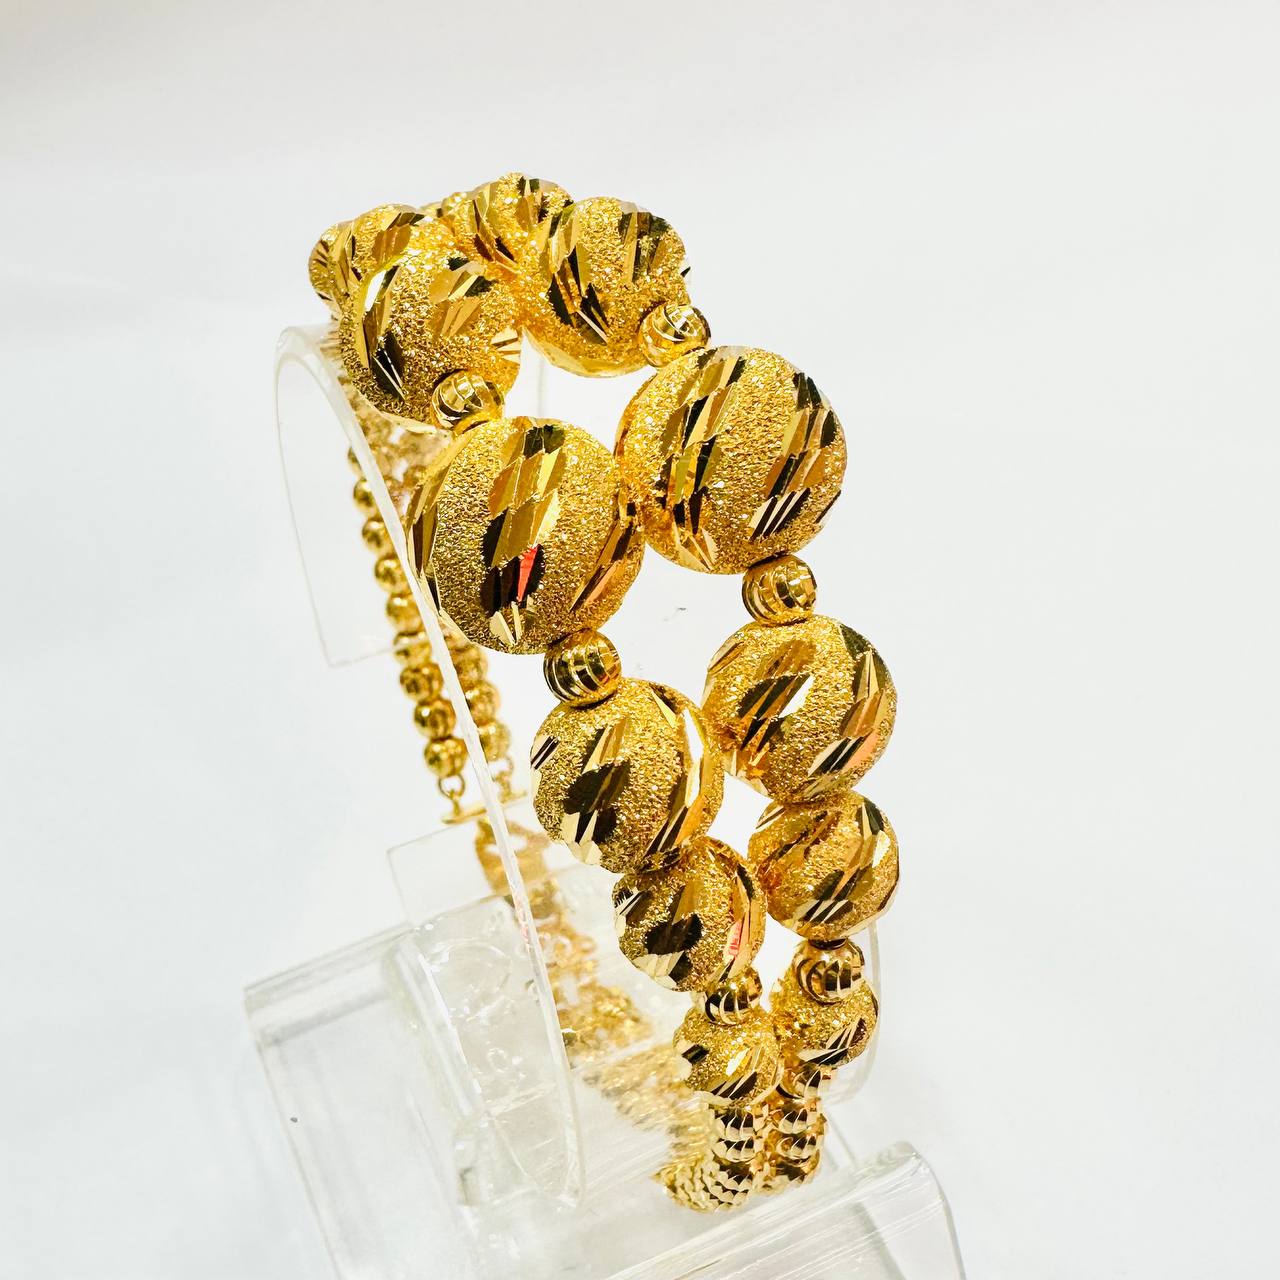 22k / 916 Gold Ball Bracelet V3-916 gold-Best Gold Shop